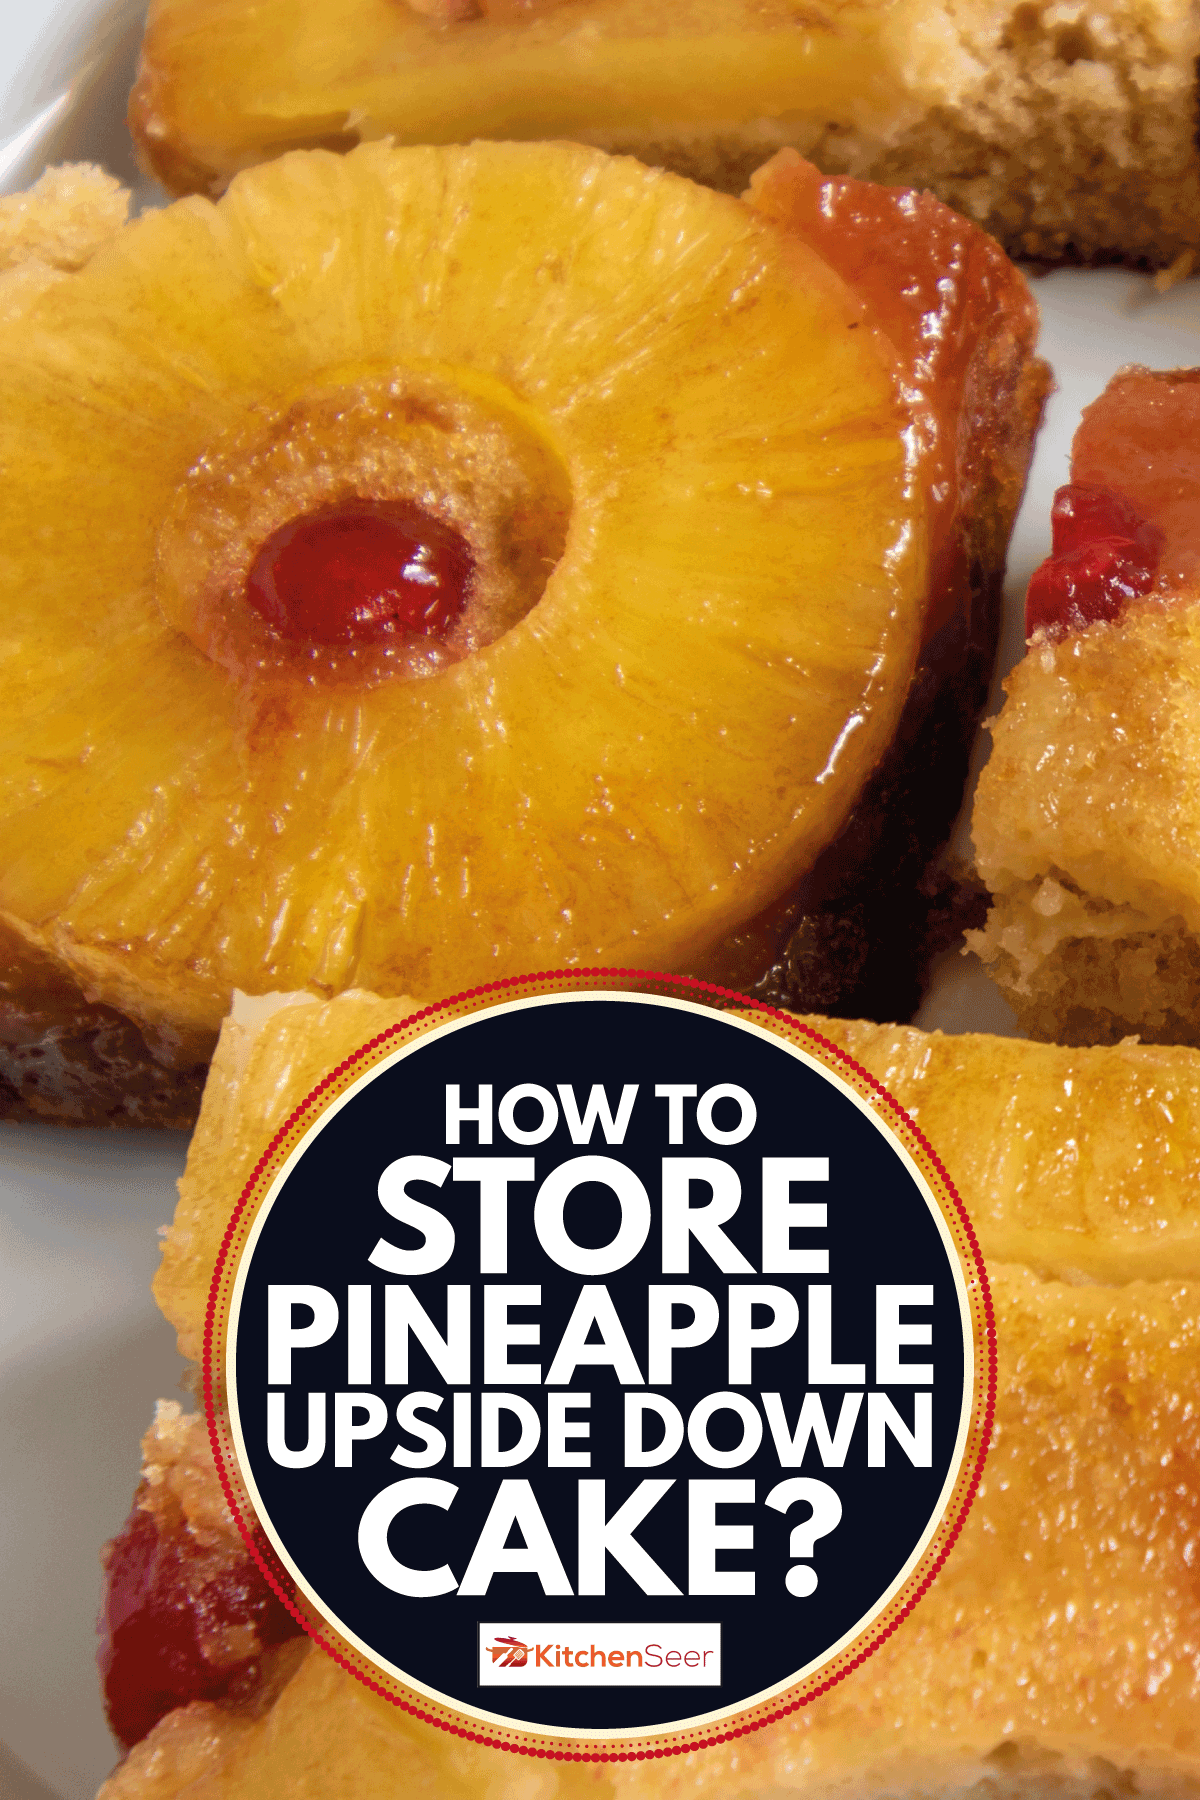 把菠萝切成上下颠倒的蛋糕，放在白盘子里。如何储存菠萝倒立蛋糕